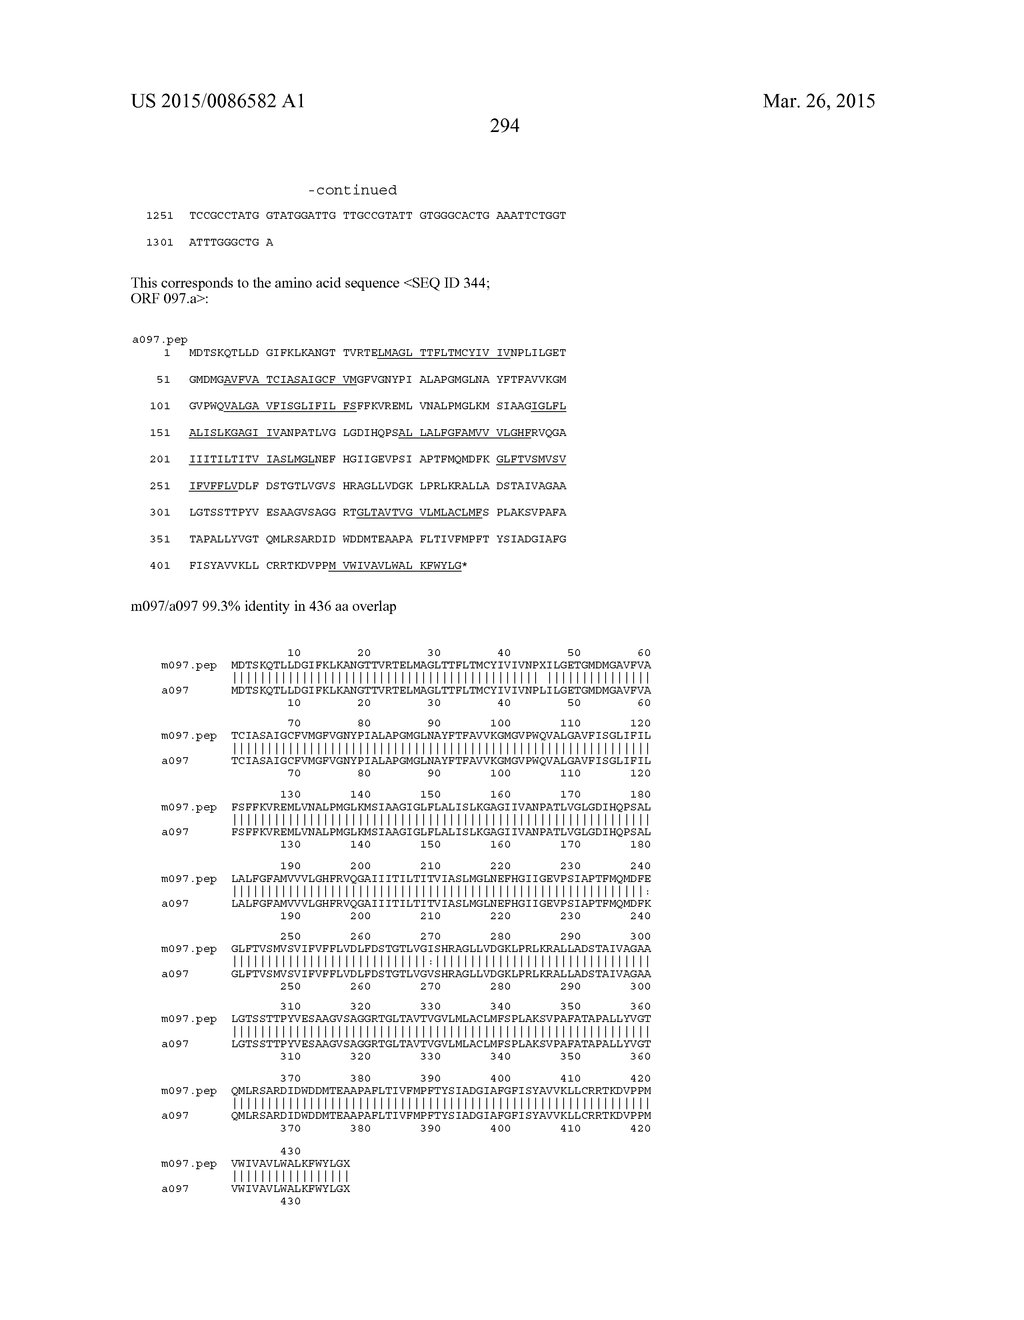 NEISSERIA MENINGITIDIS ANTIGENS AND COMPOSITIONS - diagram, schematic, and image 326